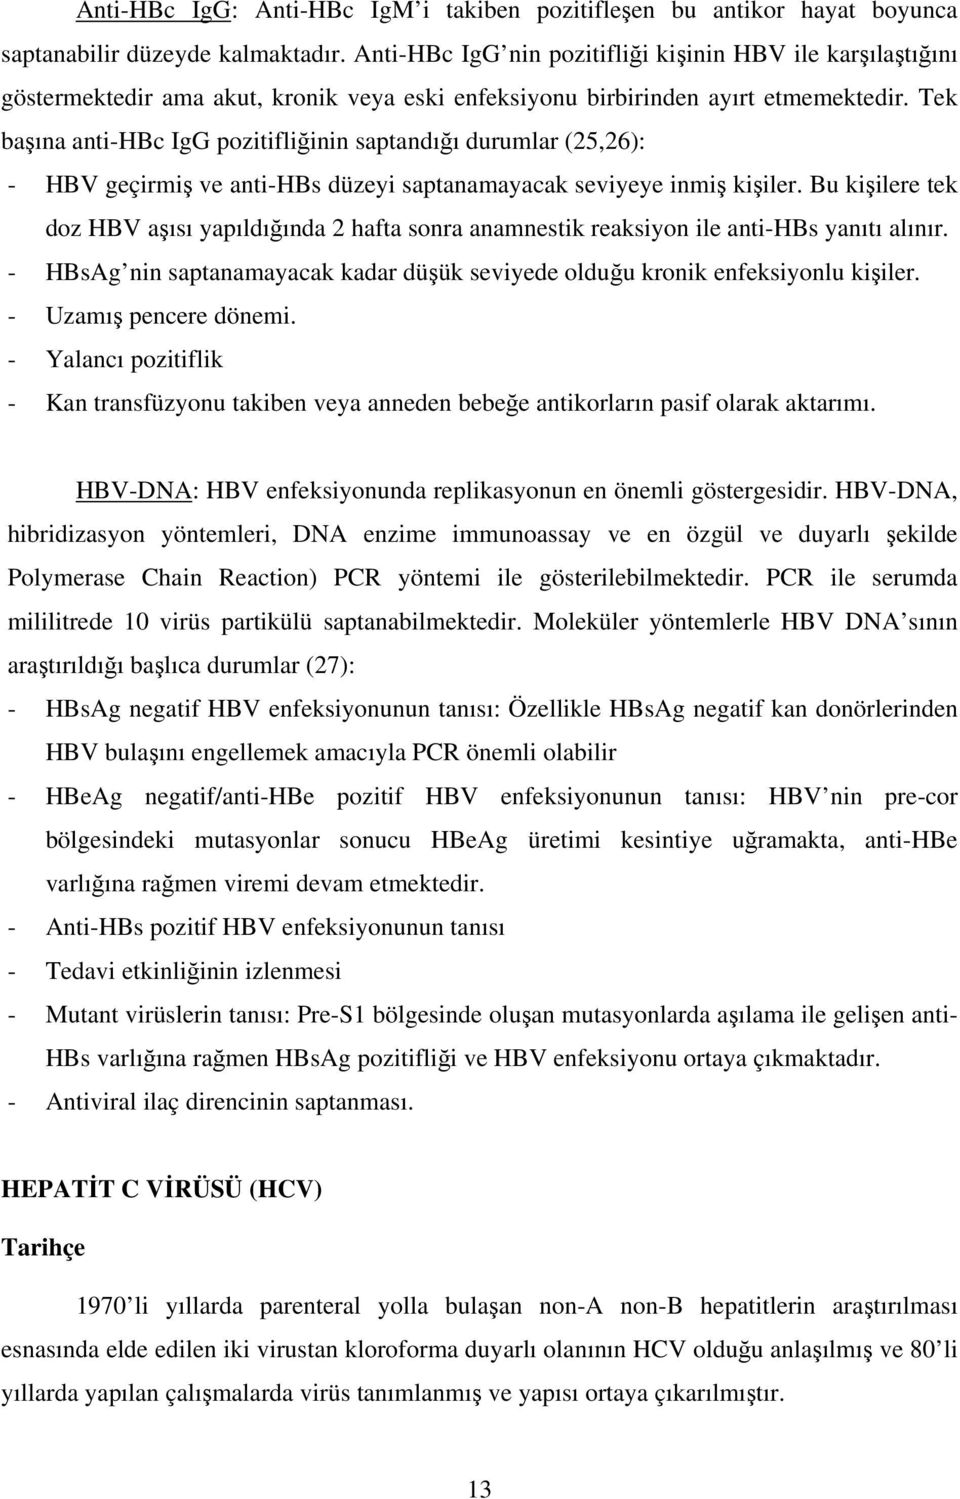 Tek baına anti-hbc IgG pozitifliinin saptandıı durumlar (25,26): - HBV geçirmi ve anti-hbs düzeyi saptanamayacak seviyeye inmi kiiler.